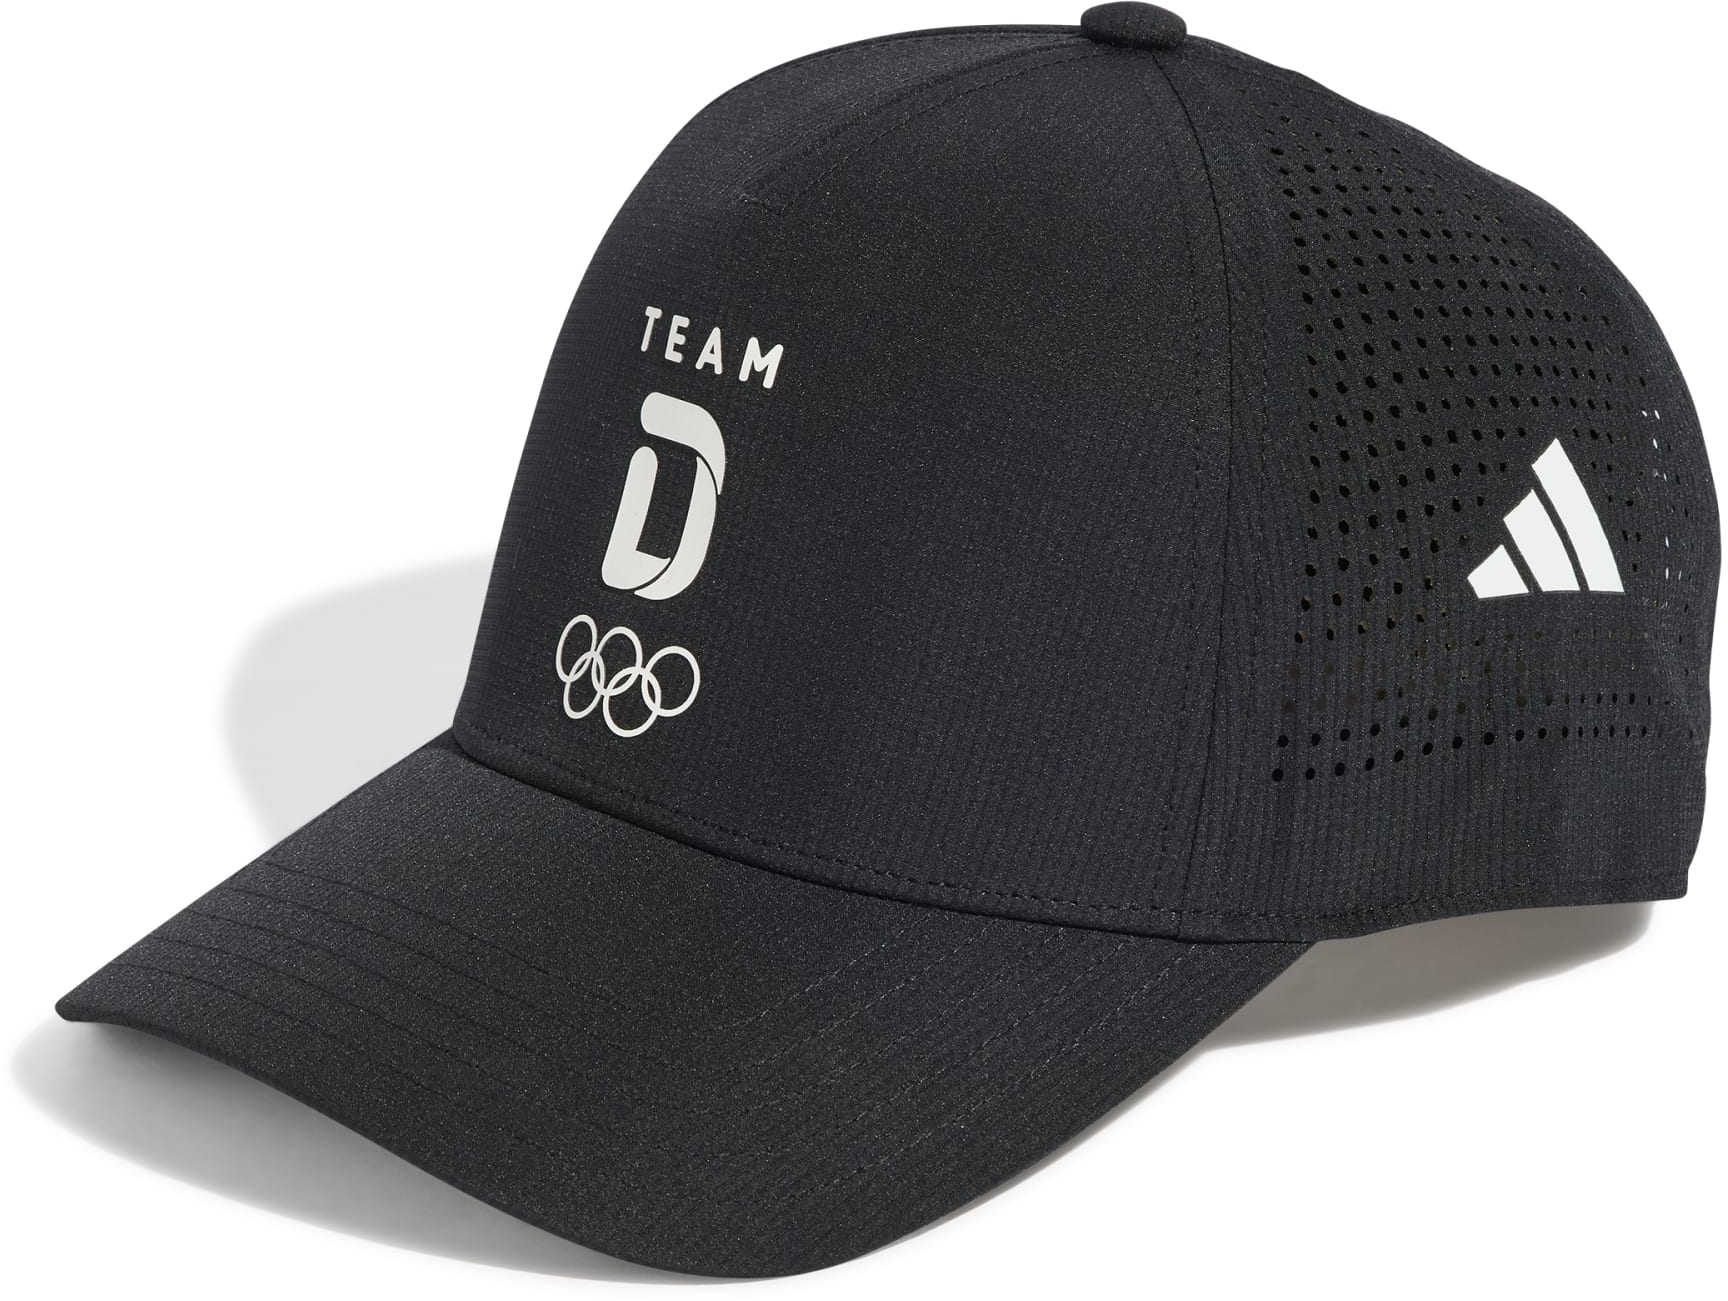 Team D Adidas Trucker Cap